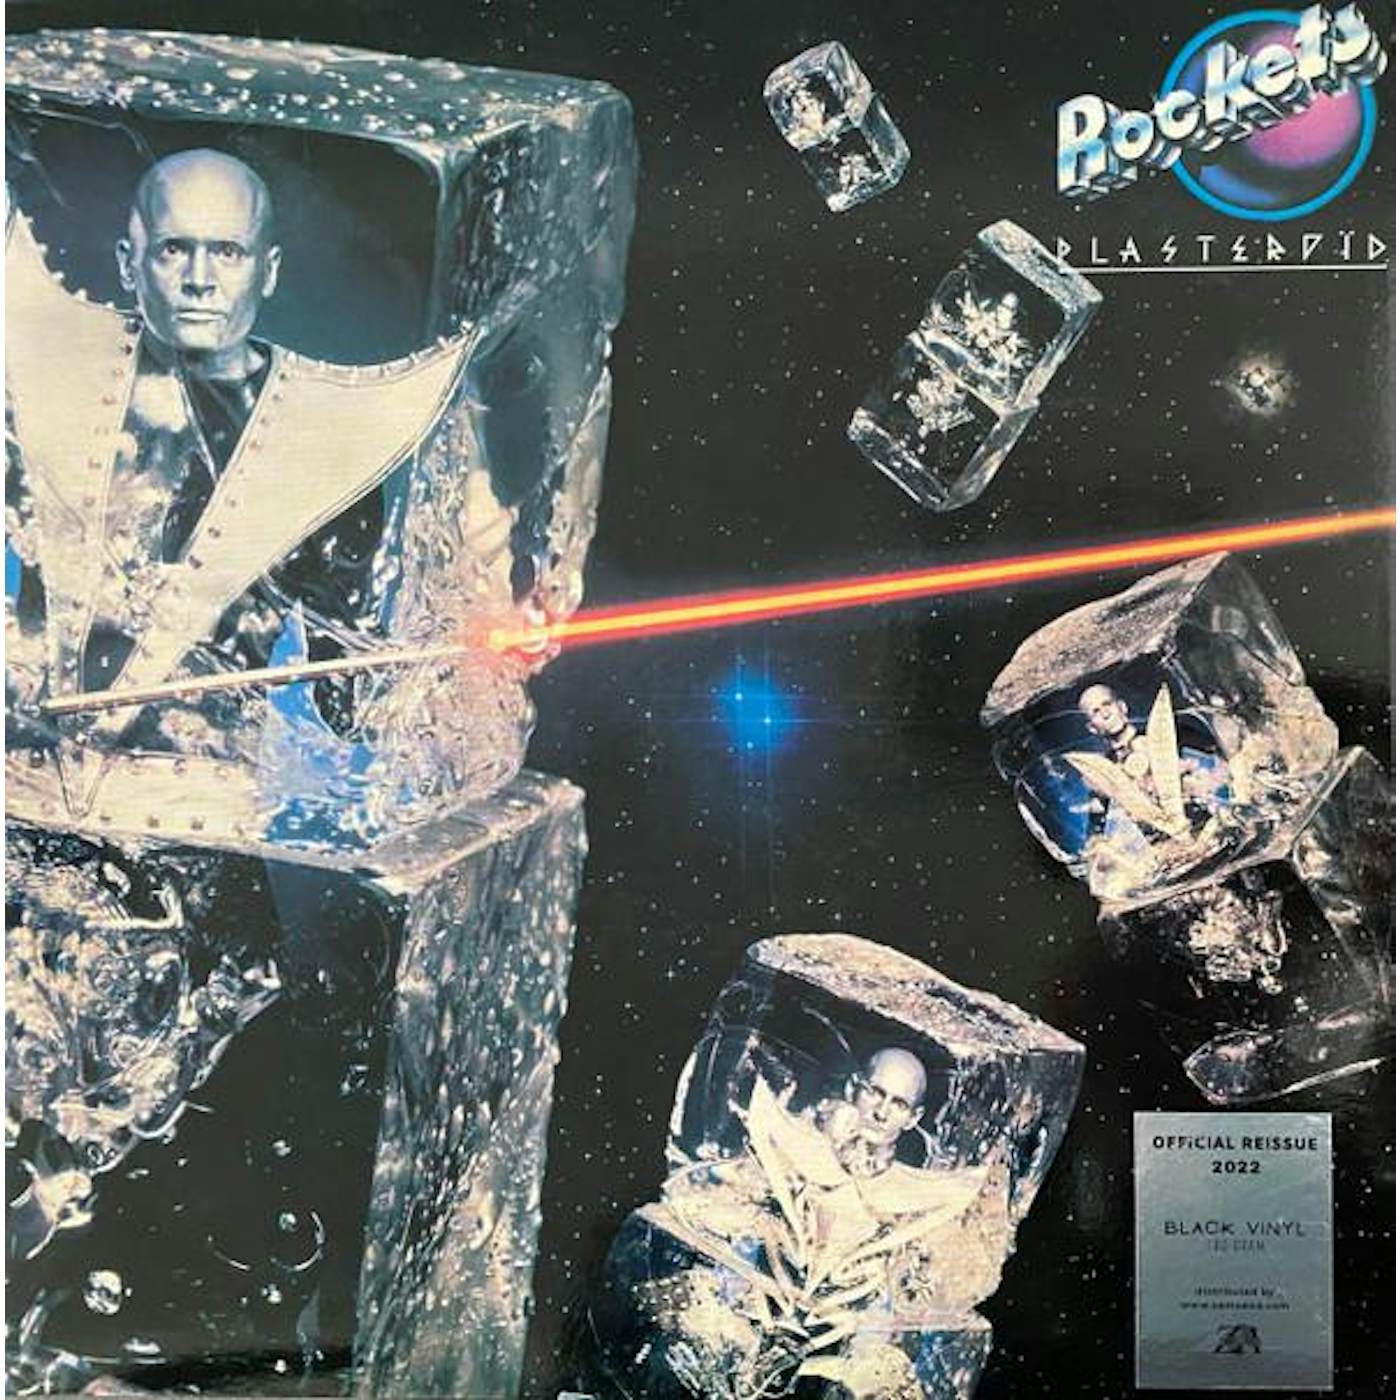 Rockets Plasteroid Vinyl Record